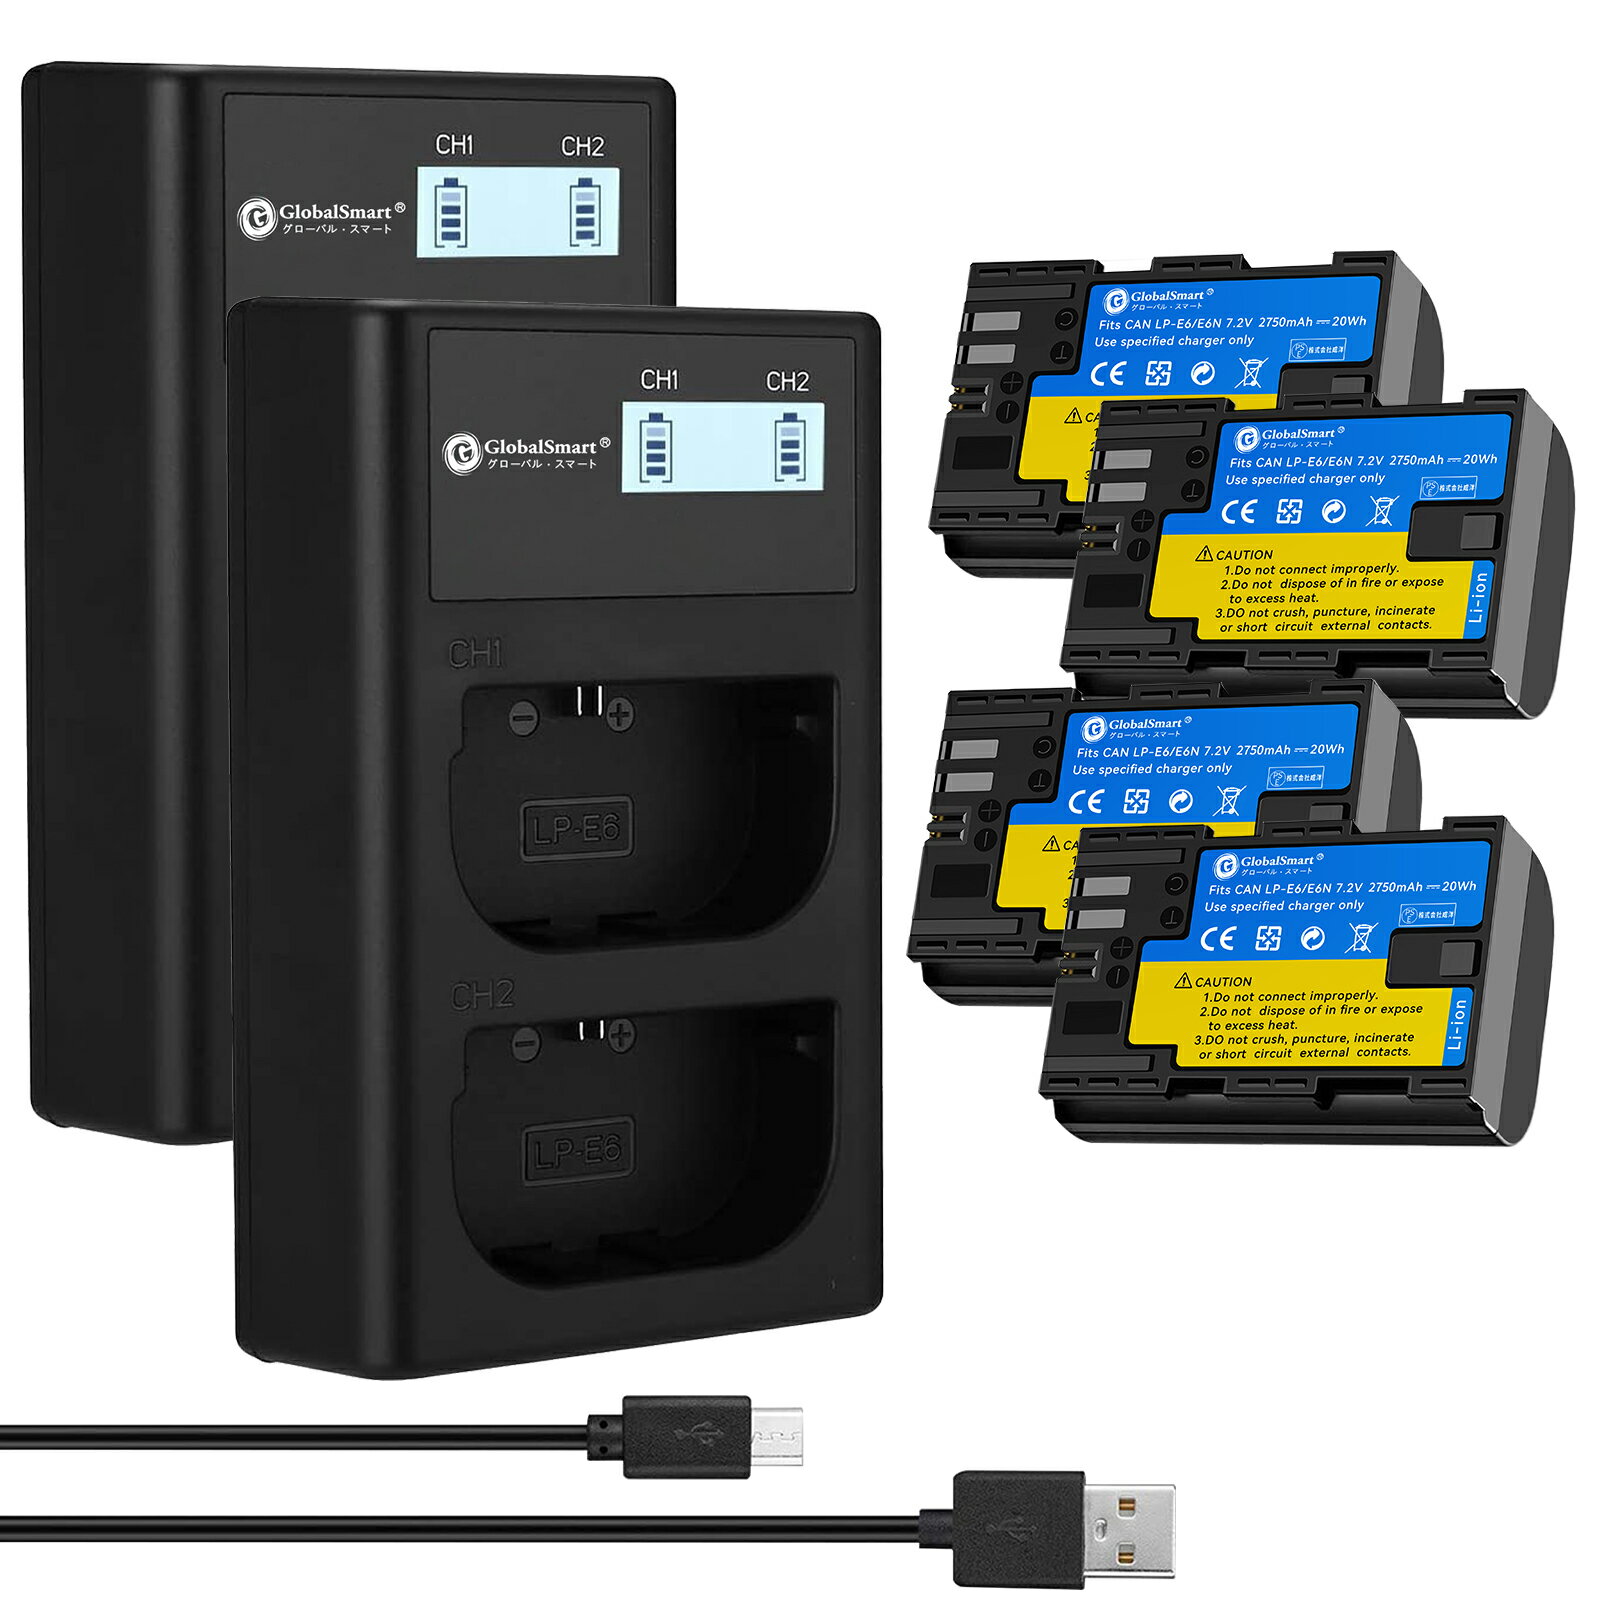 【2個USB充電器と電池4個】Globalsmart CANON EOS 5DS R 対応 高性能互換 バッテリー【2700mAh 7.2V】LP-E6 / LP-E6N / LP-E6NH/EOS R / R6 / 90D / 5D Mark IV 対応 PSE認証 1年保証 リチャージャブルバッテリー 充電池 予備バッテリー 1